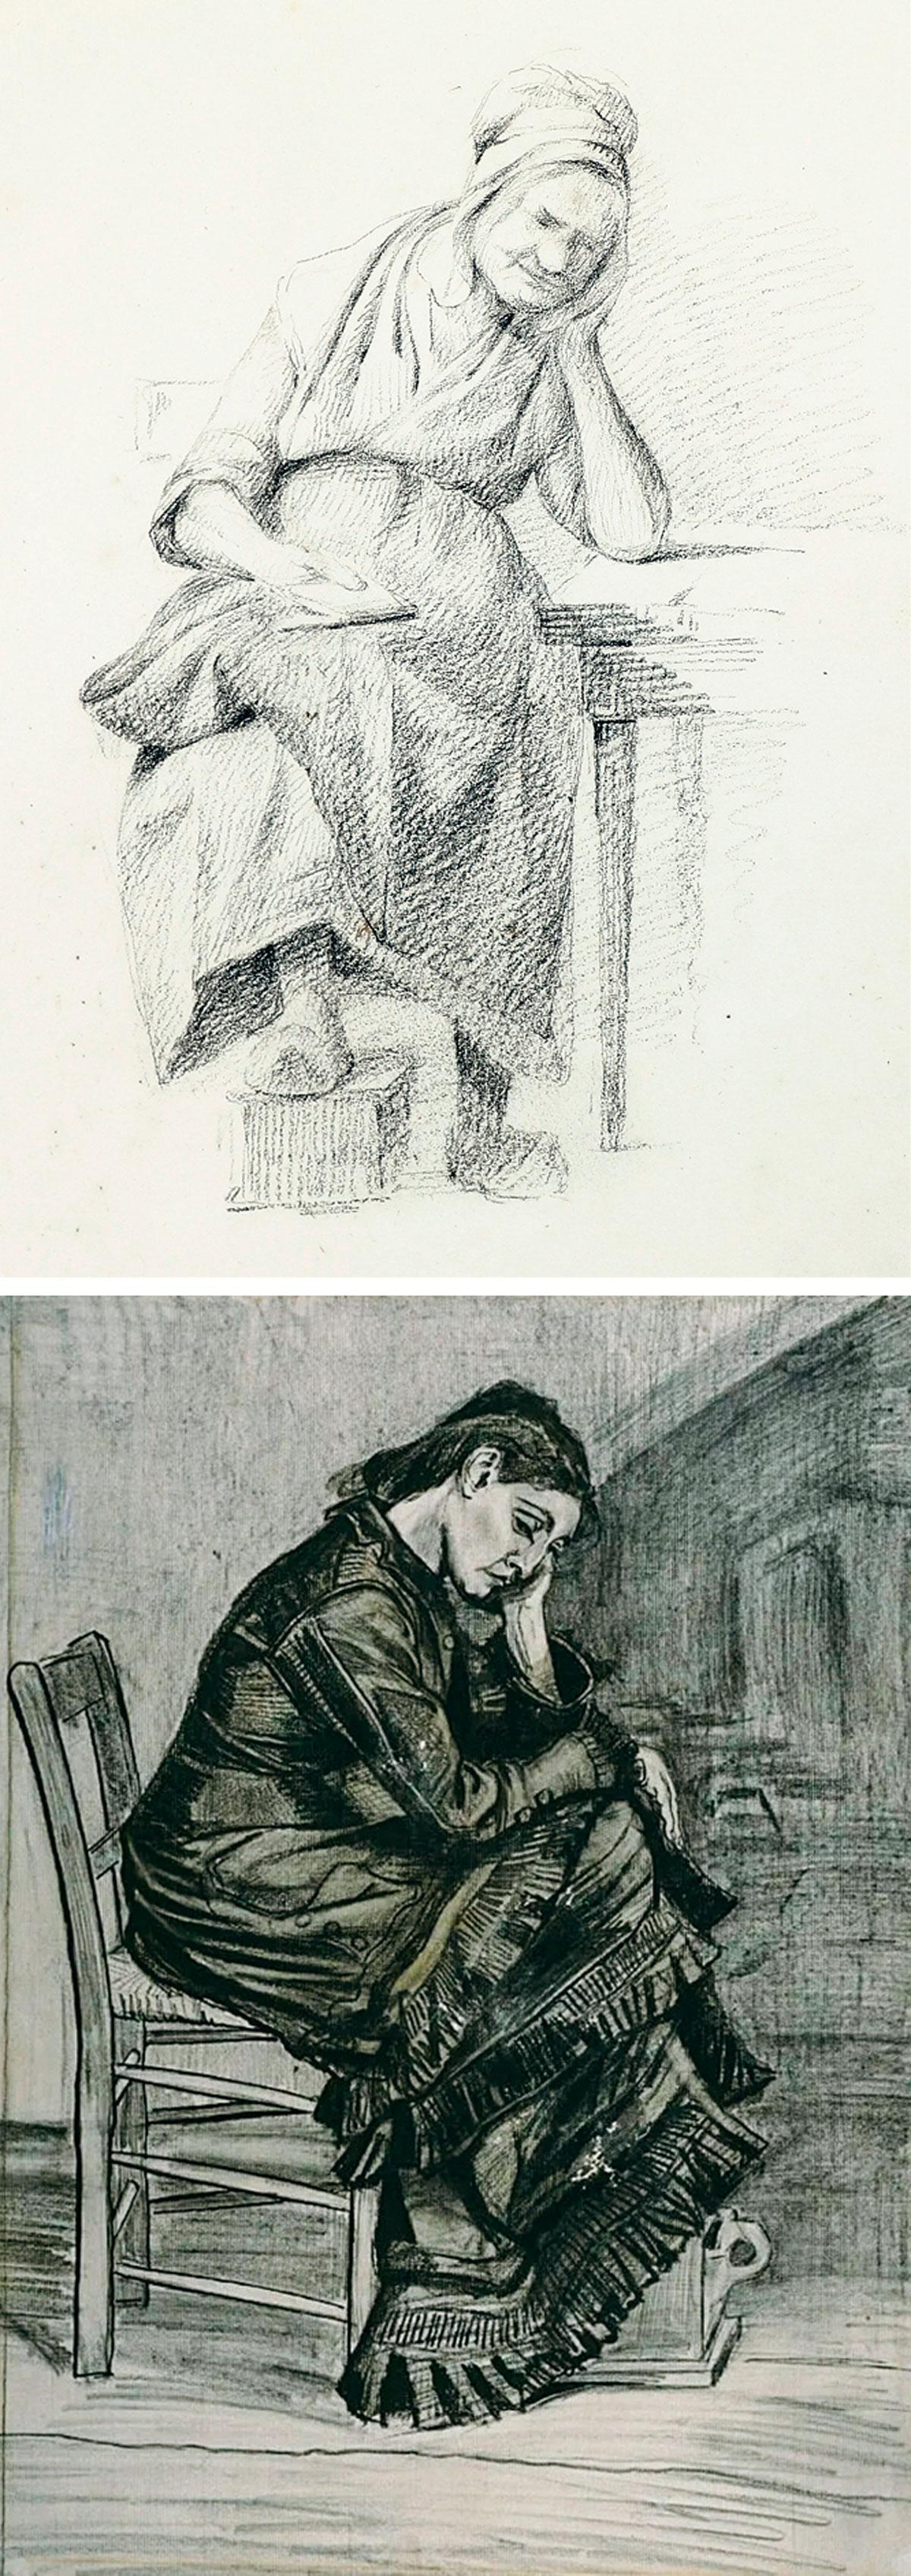 Werk van Pieterszen en Van Gogh. ‘De gelijkenis is bijna een-op-een.’